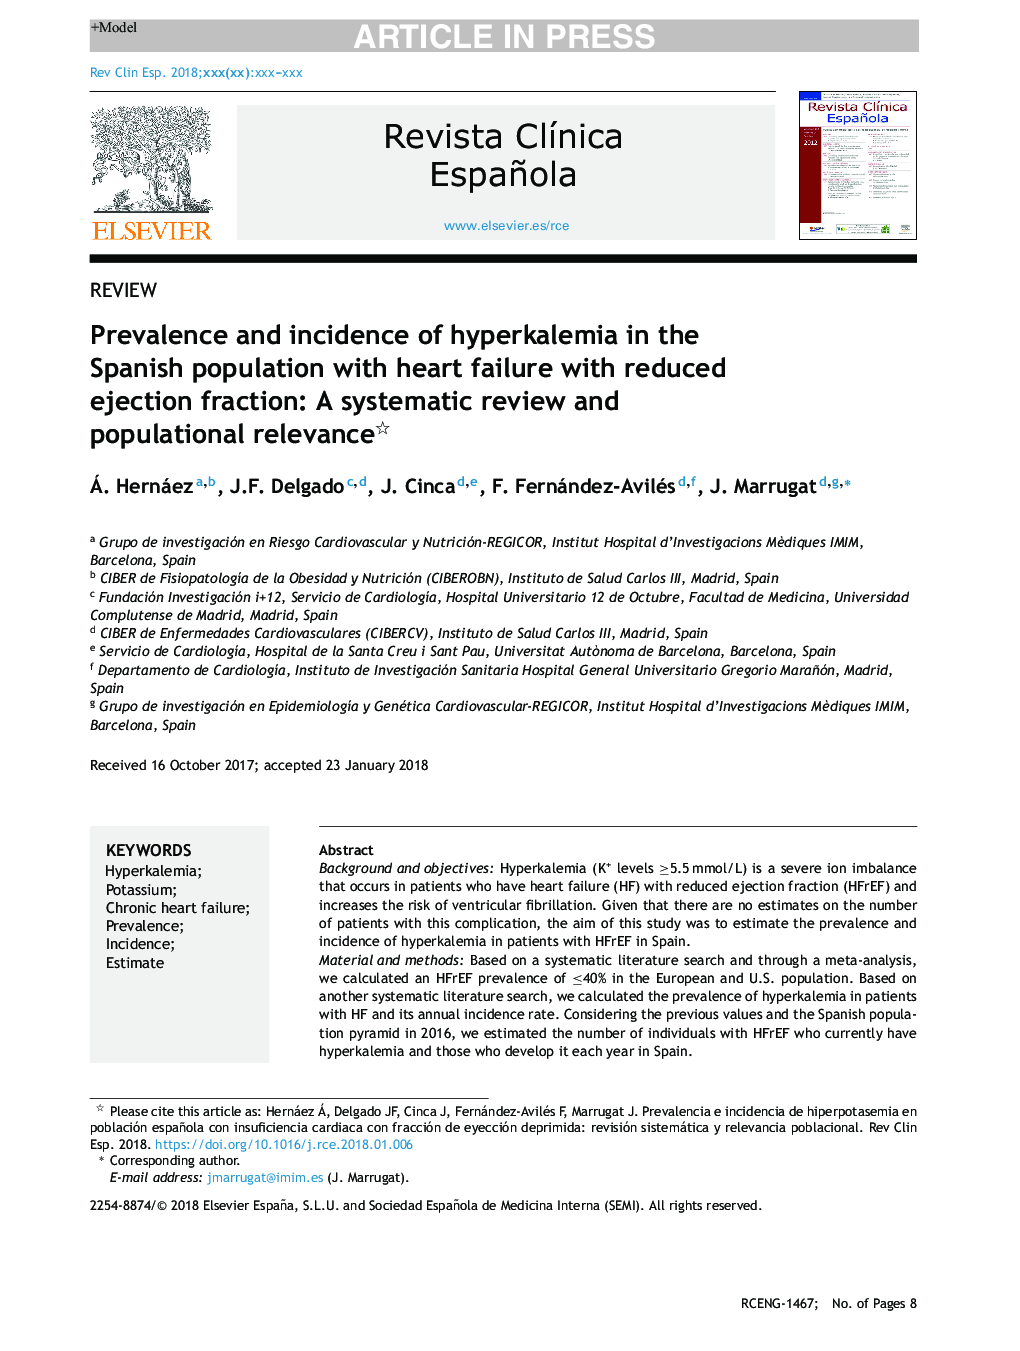 شیوع و بروز هیپرکالمی در جمعیت اسپانیایی با نارسایی قلبی و کاهش کسر خروجی: یک بررسی منظم و ارتباط جمعیتی 